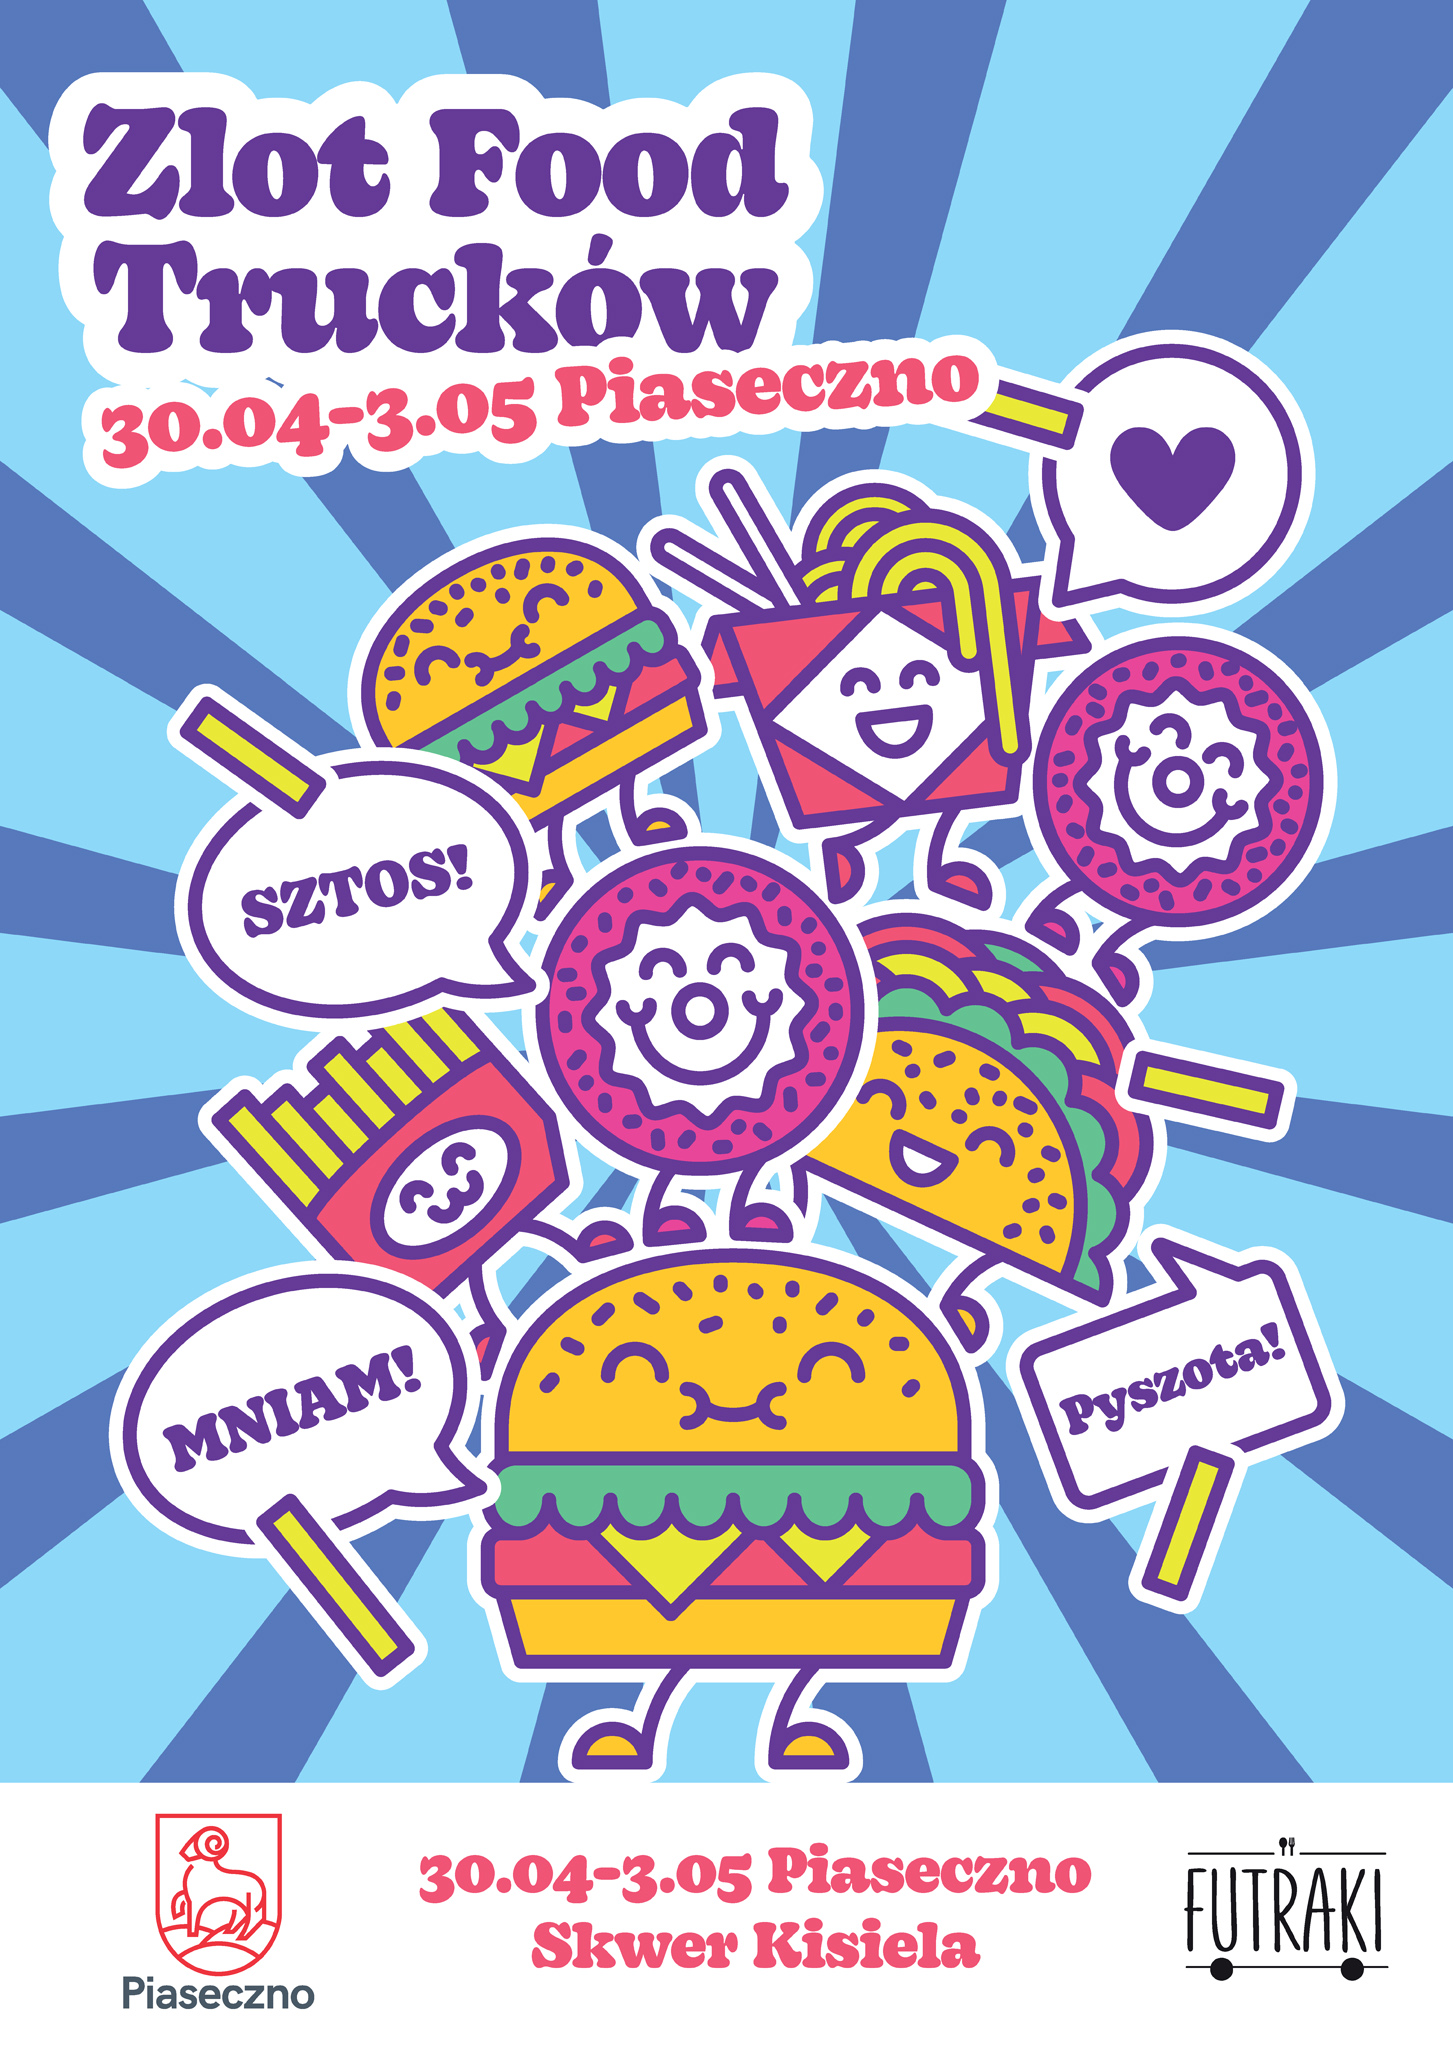 Plakat wydarzenia Zlot Food Trucków Piaseczno 2022